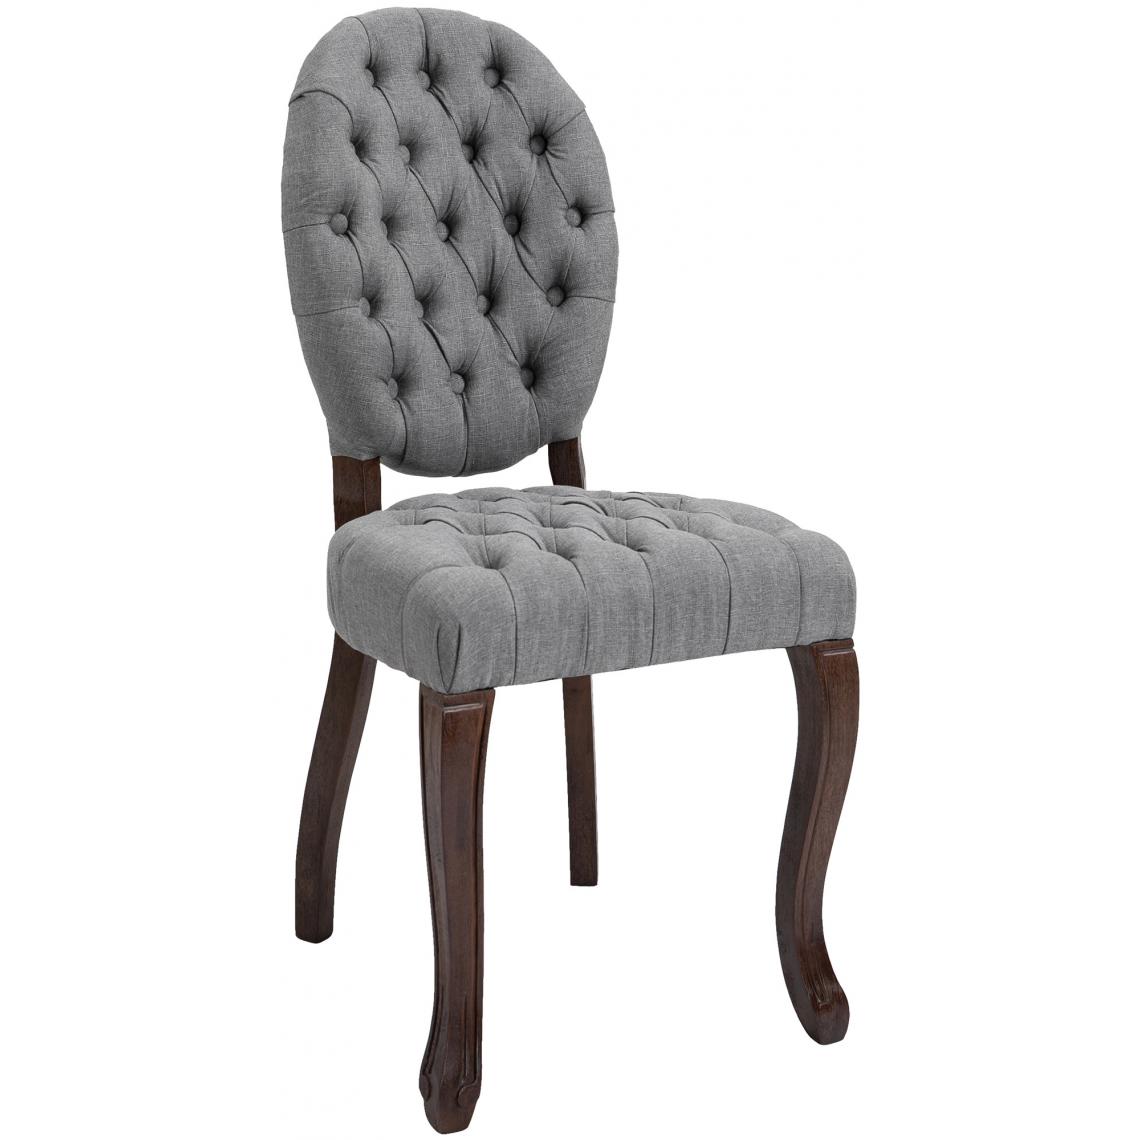 Icaverne - Moderne Chaise de salle à manger Saint-Domingue tissu antique couleur gris - Chaises